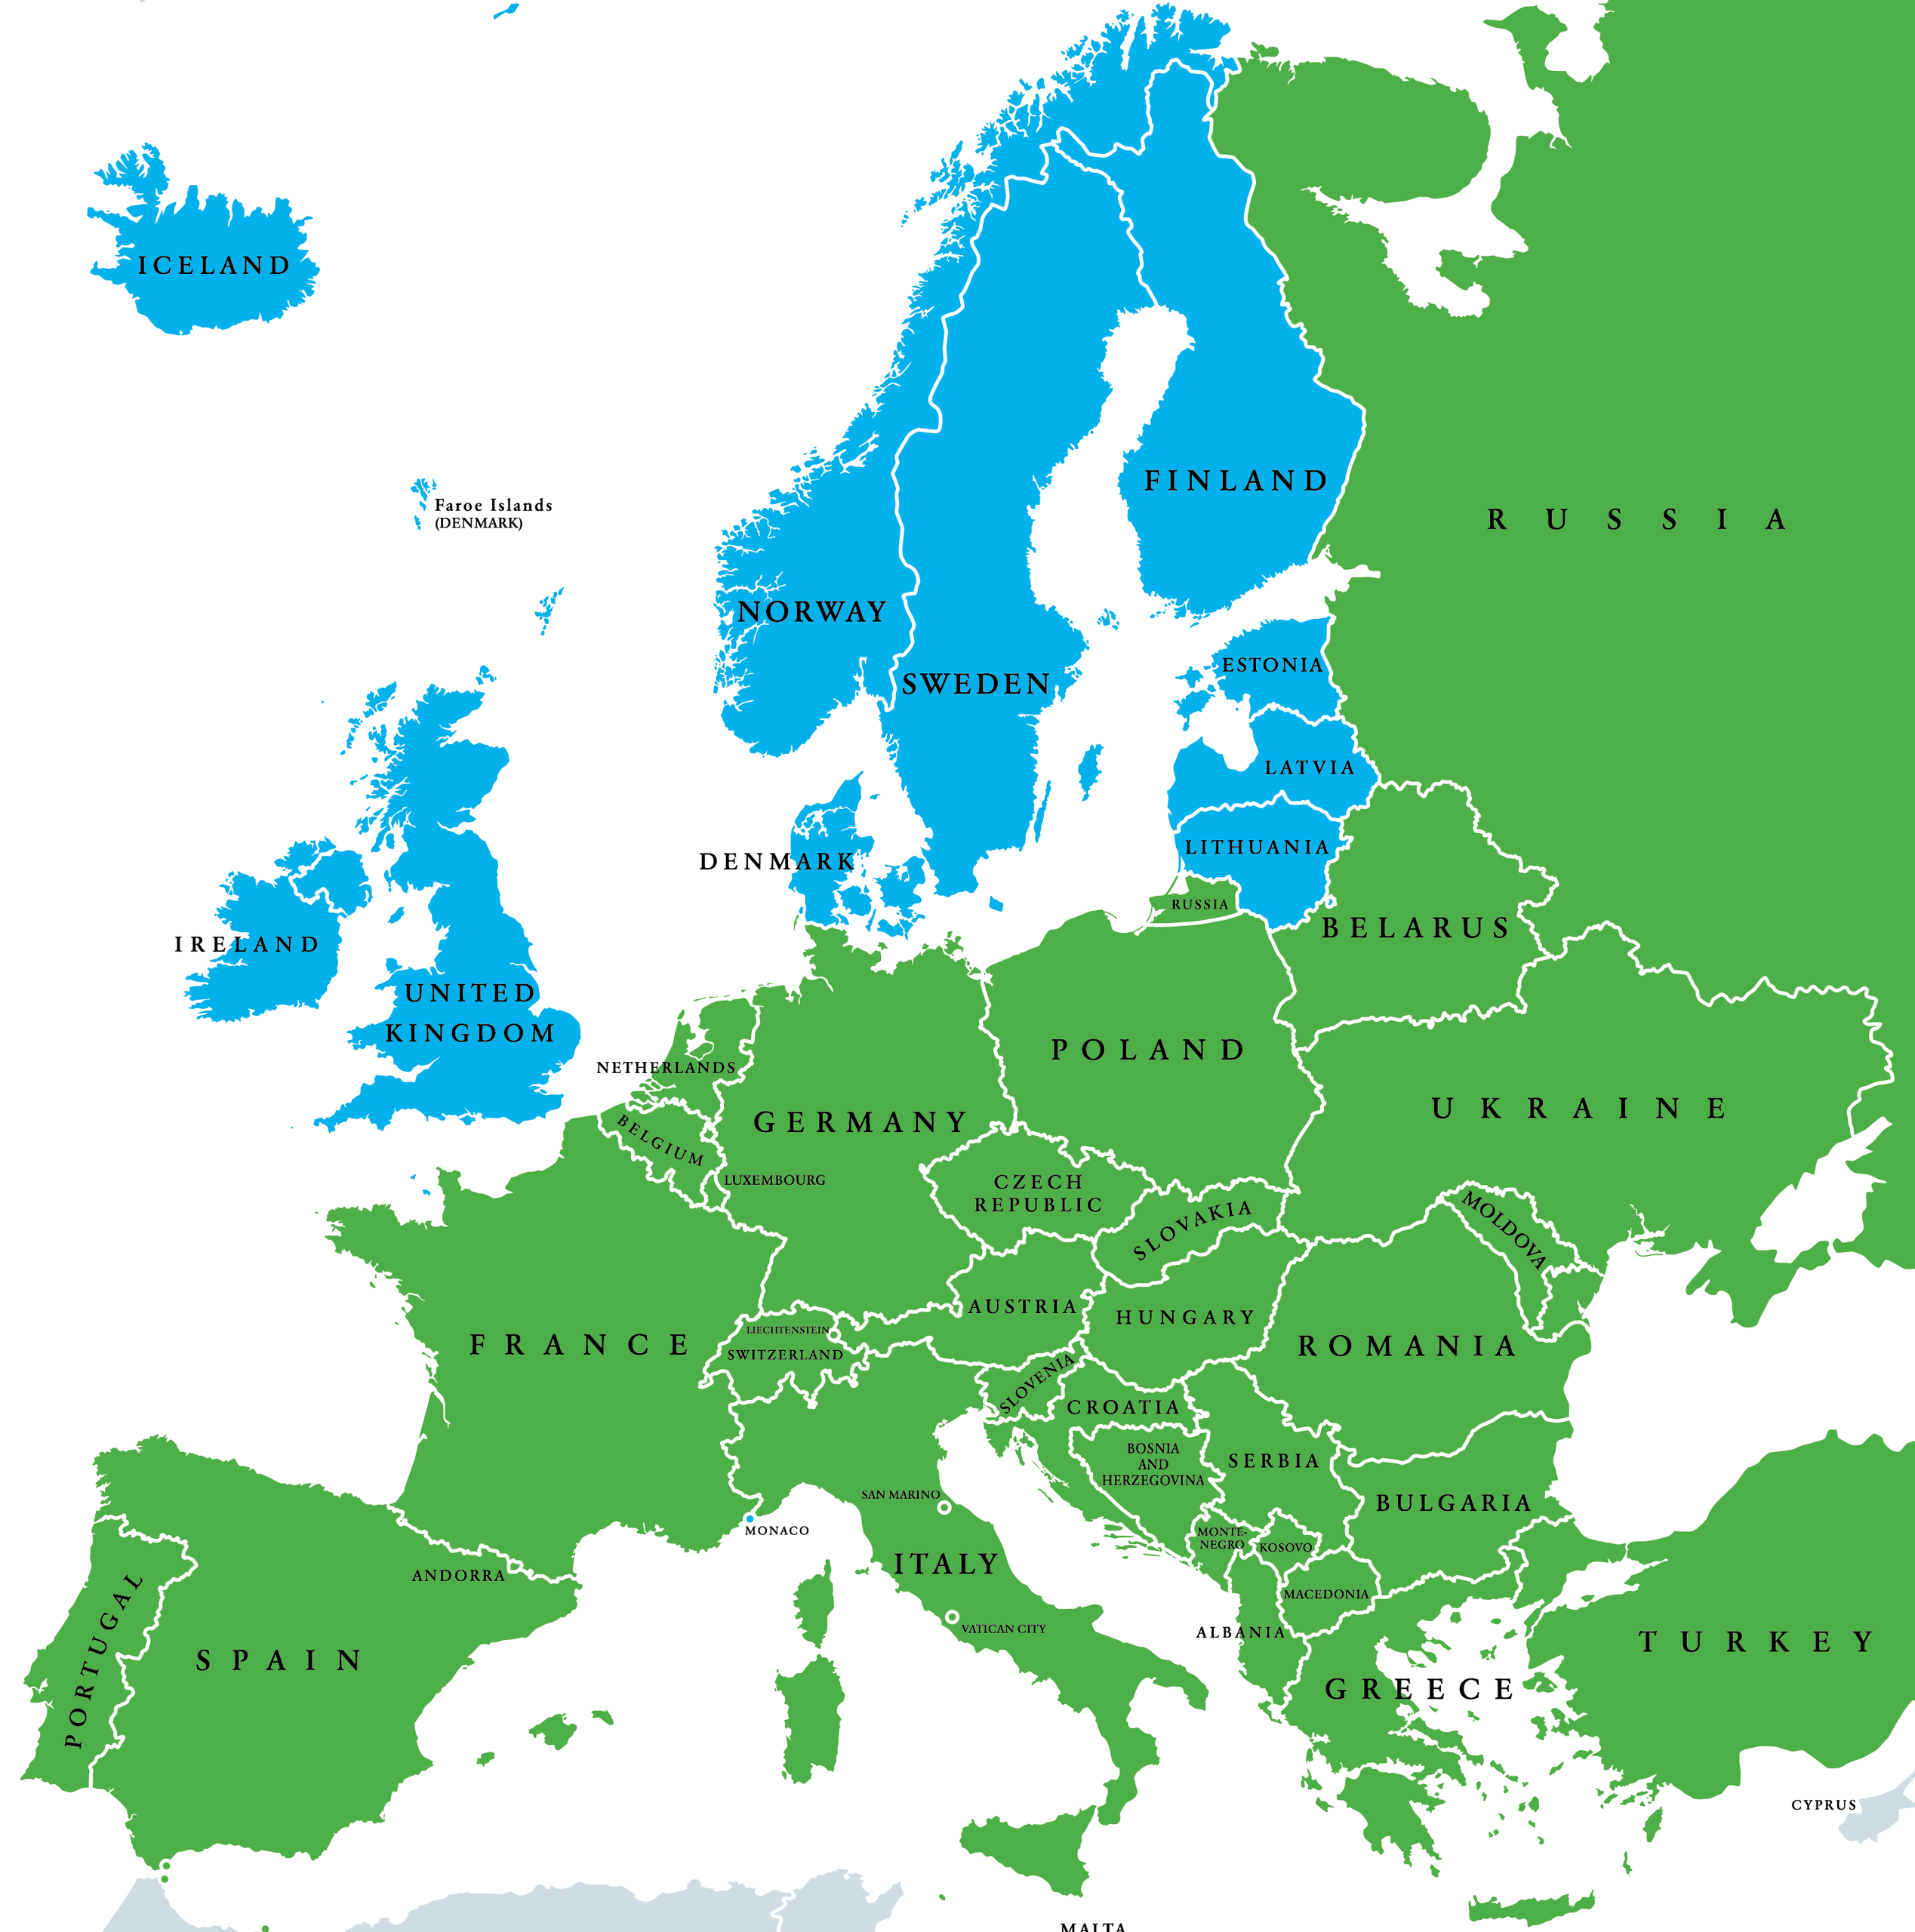 Europe area. Северная Европа. Карта - Европа. Карта Северной Европы. Страны Европы.